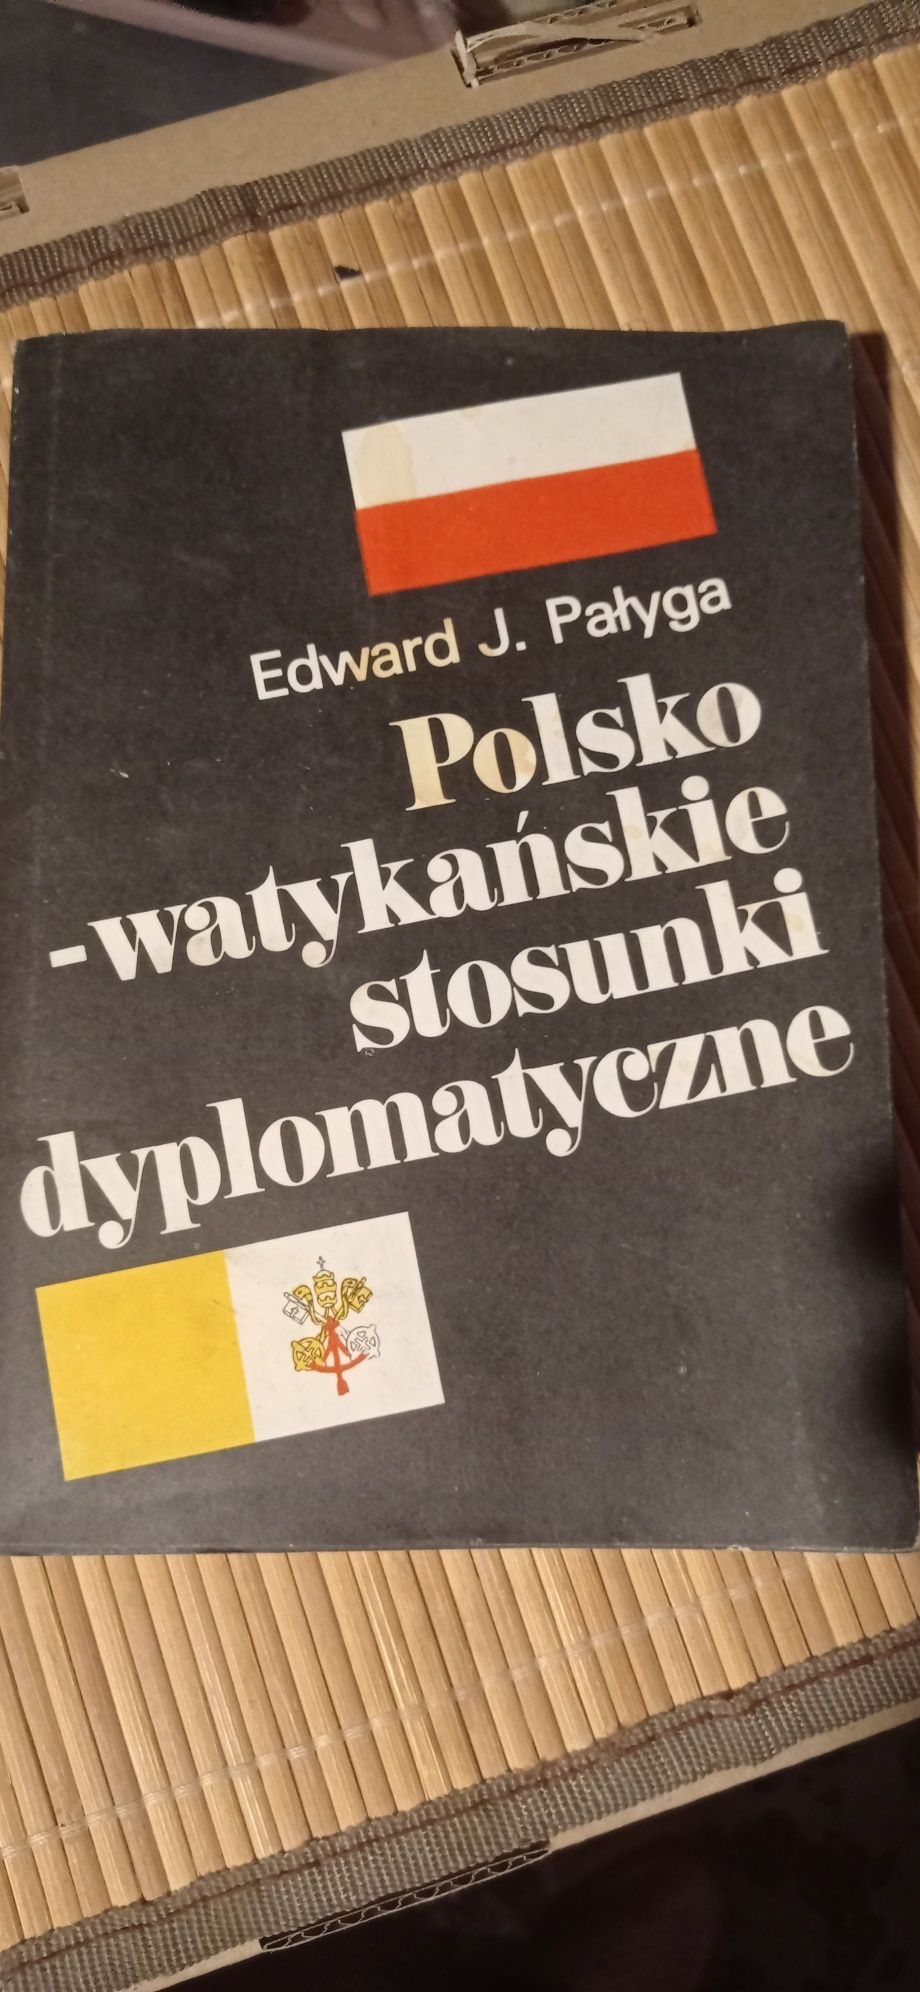 Edward J. Pałyga "Polsko-watykańskie stosunki dyplomatyczne"